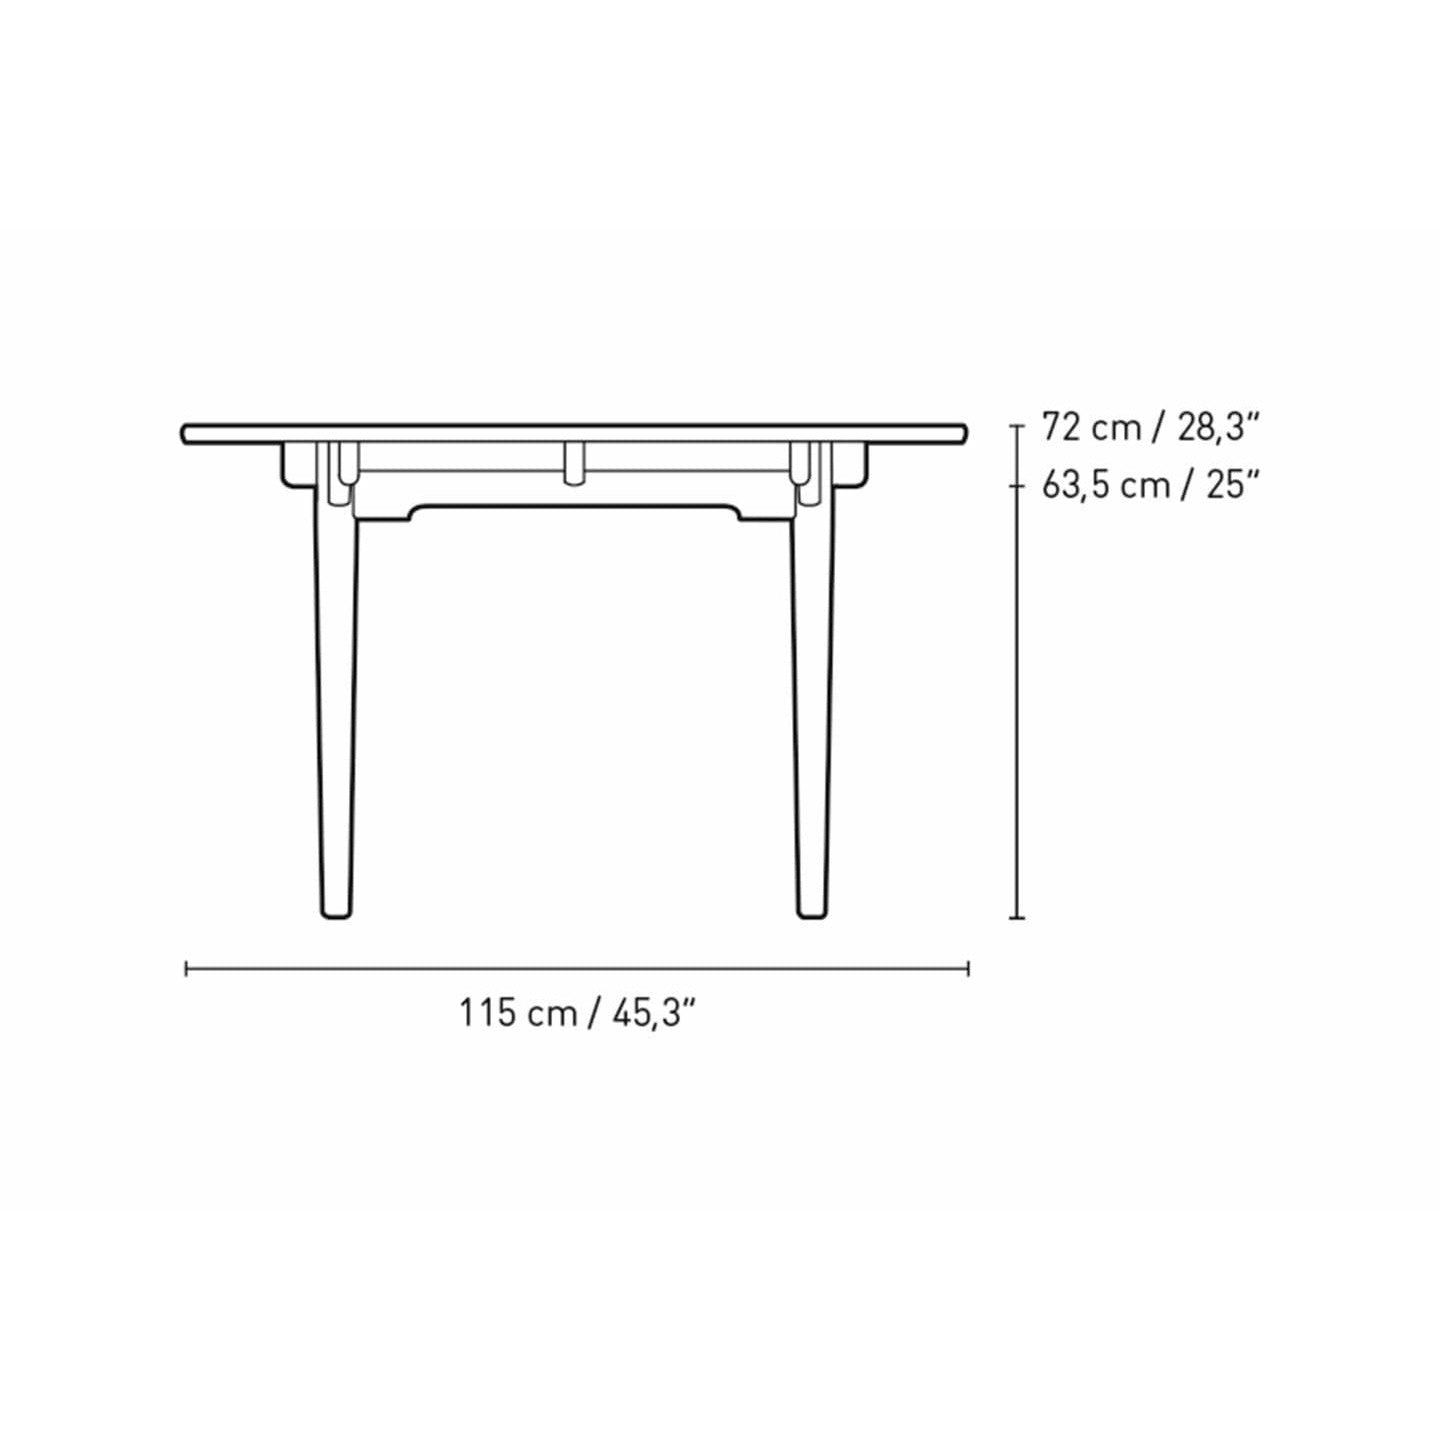 Carl Hansen CH339 matbord med dragning för 2 plattor, ekolja